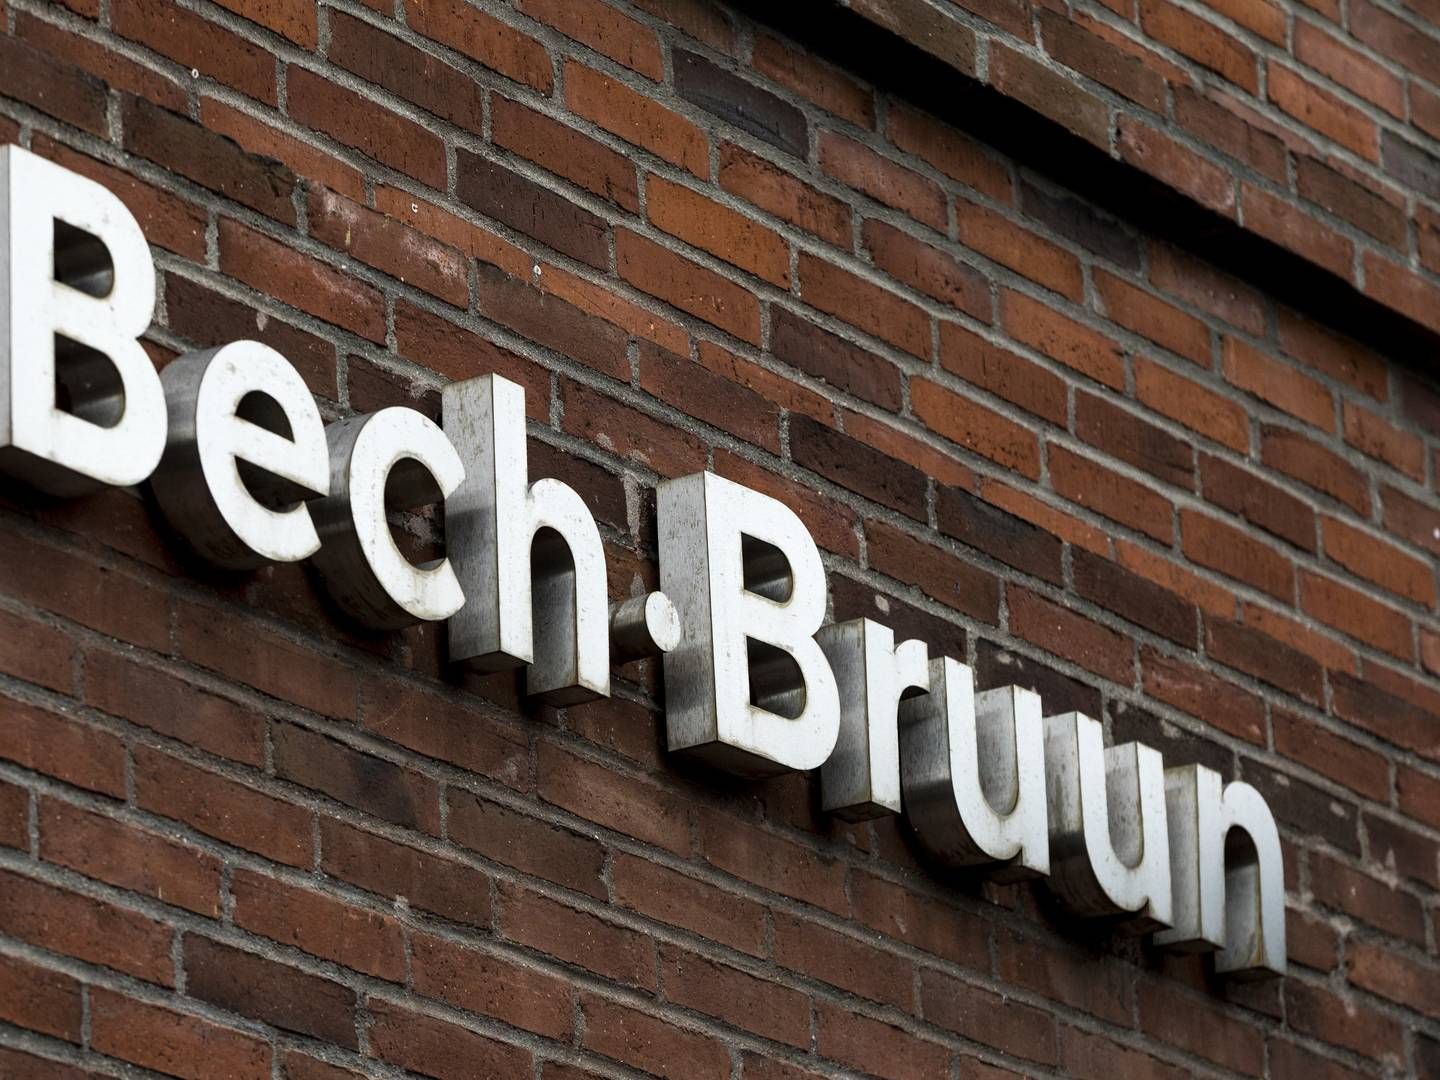 Bech-Bruun vil også have en bid af whistleblowerkagen. | Foto: Nikolai Linares